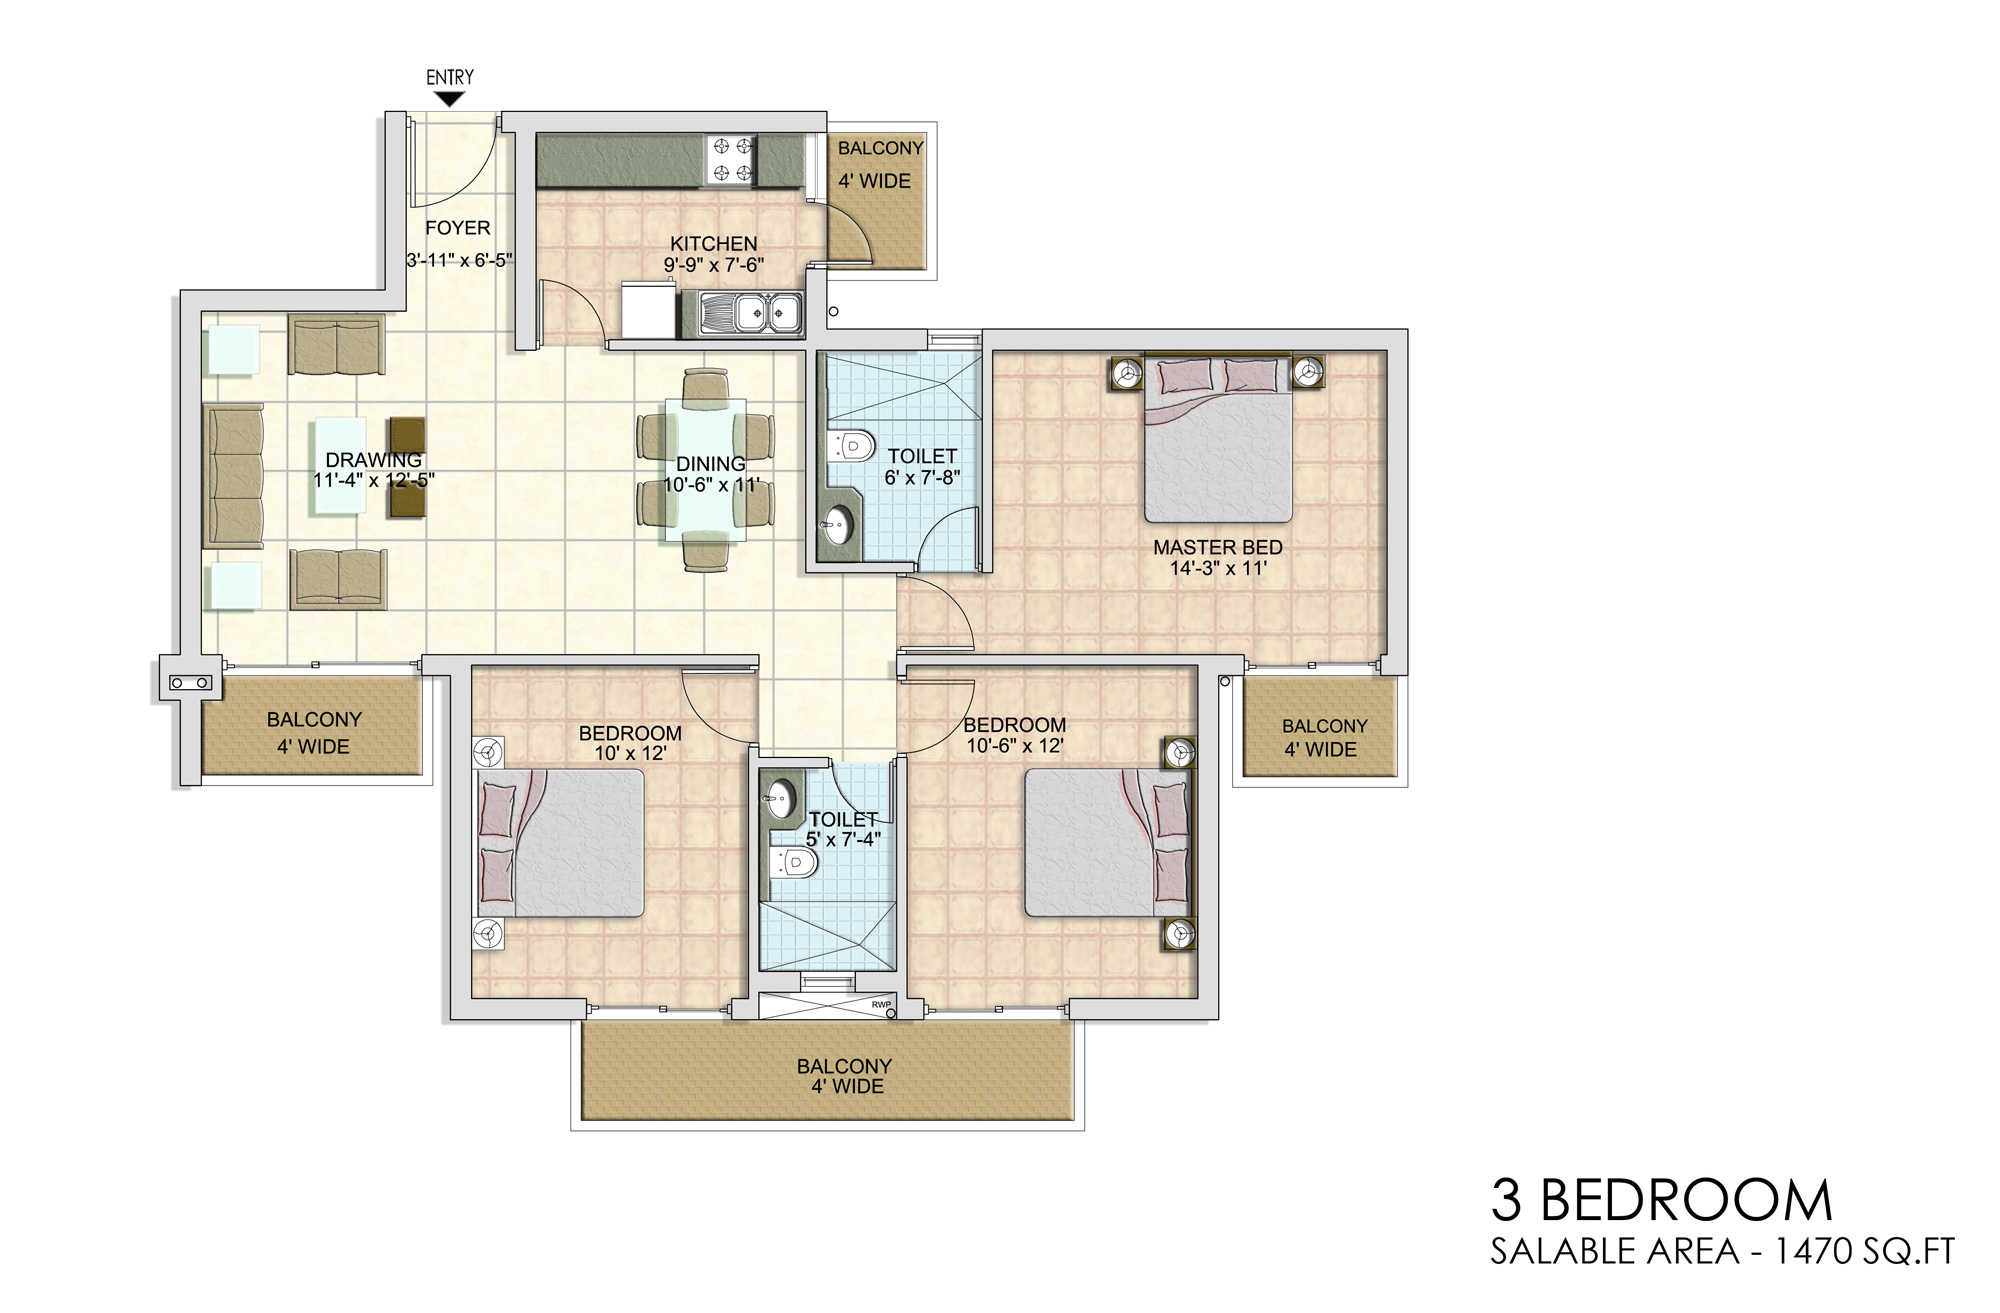 3 Bedroom (1470 sq.ft.)